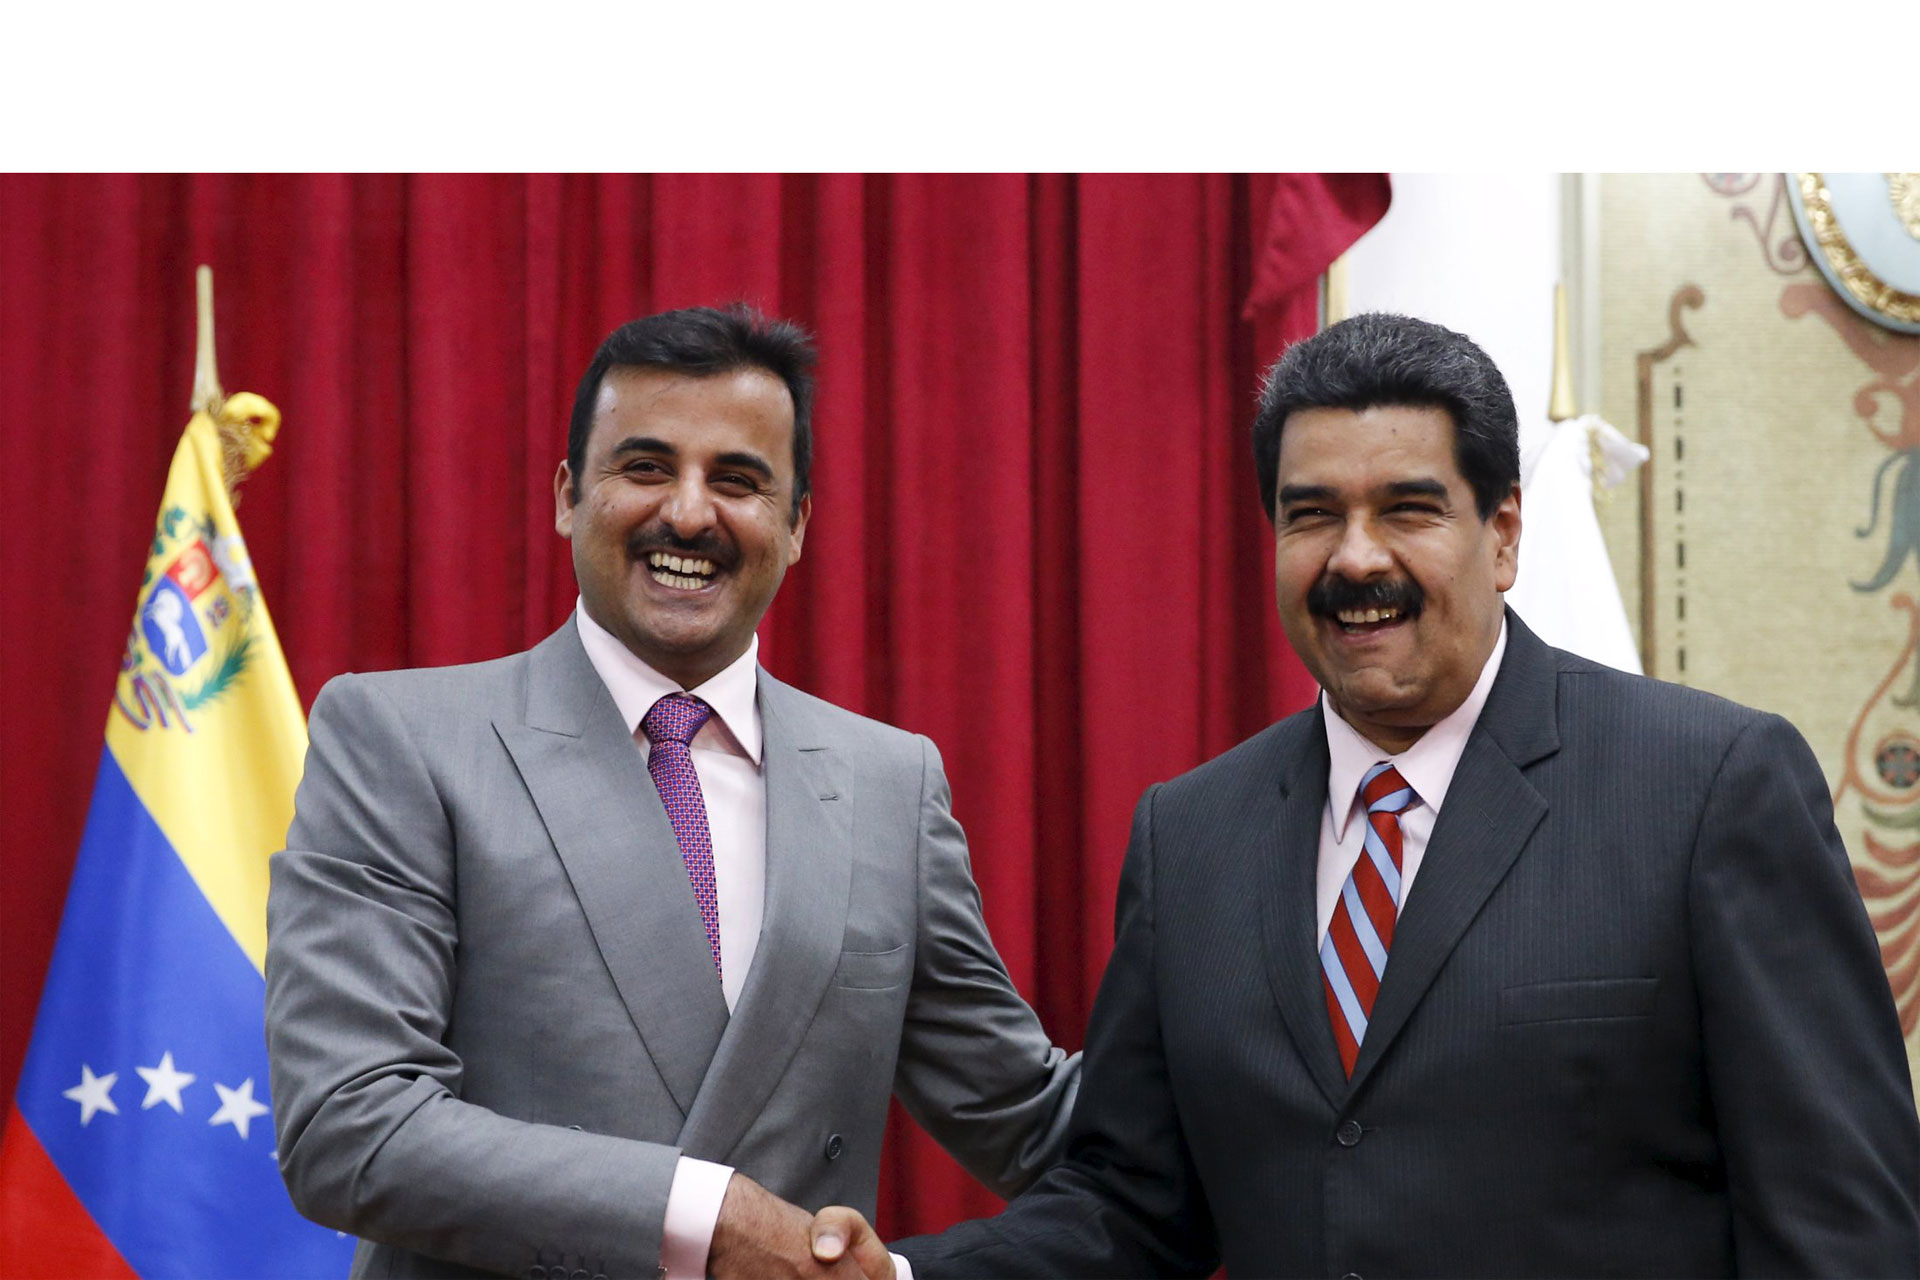 Con el objetivo de estrechar relaciones bilaterales, el emir de Qatar visitó al presidente Maduro en el Palacio de Miraflores